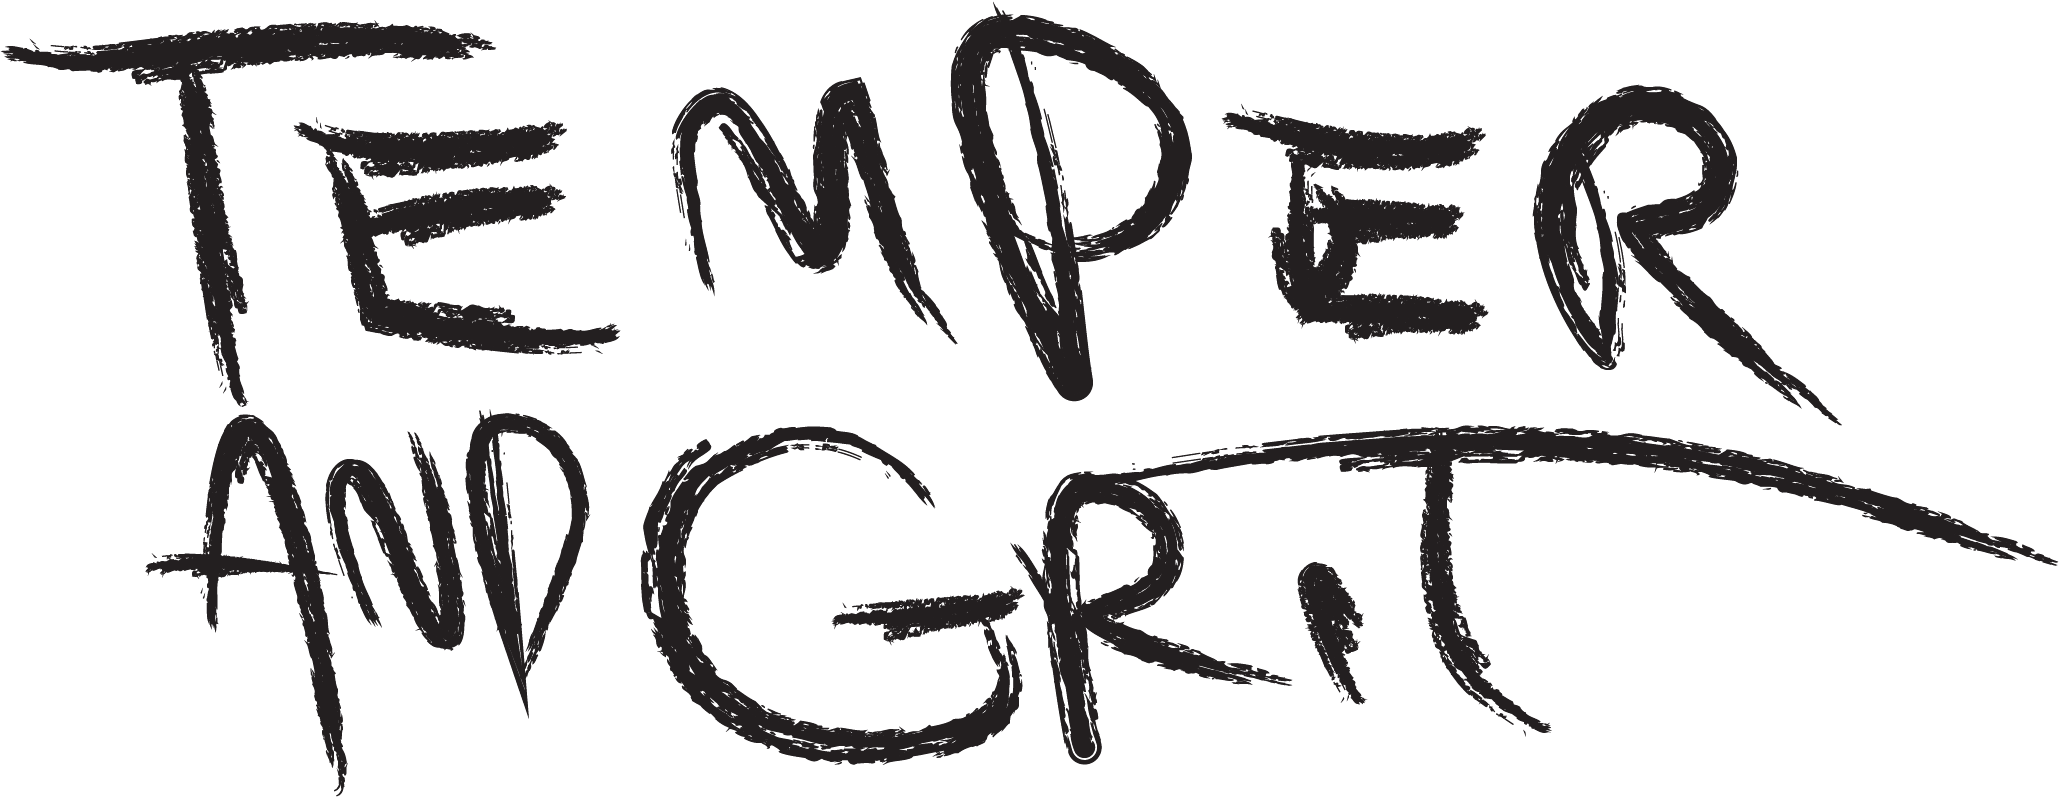 Grit Logo - Temper and Grit Logo